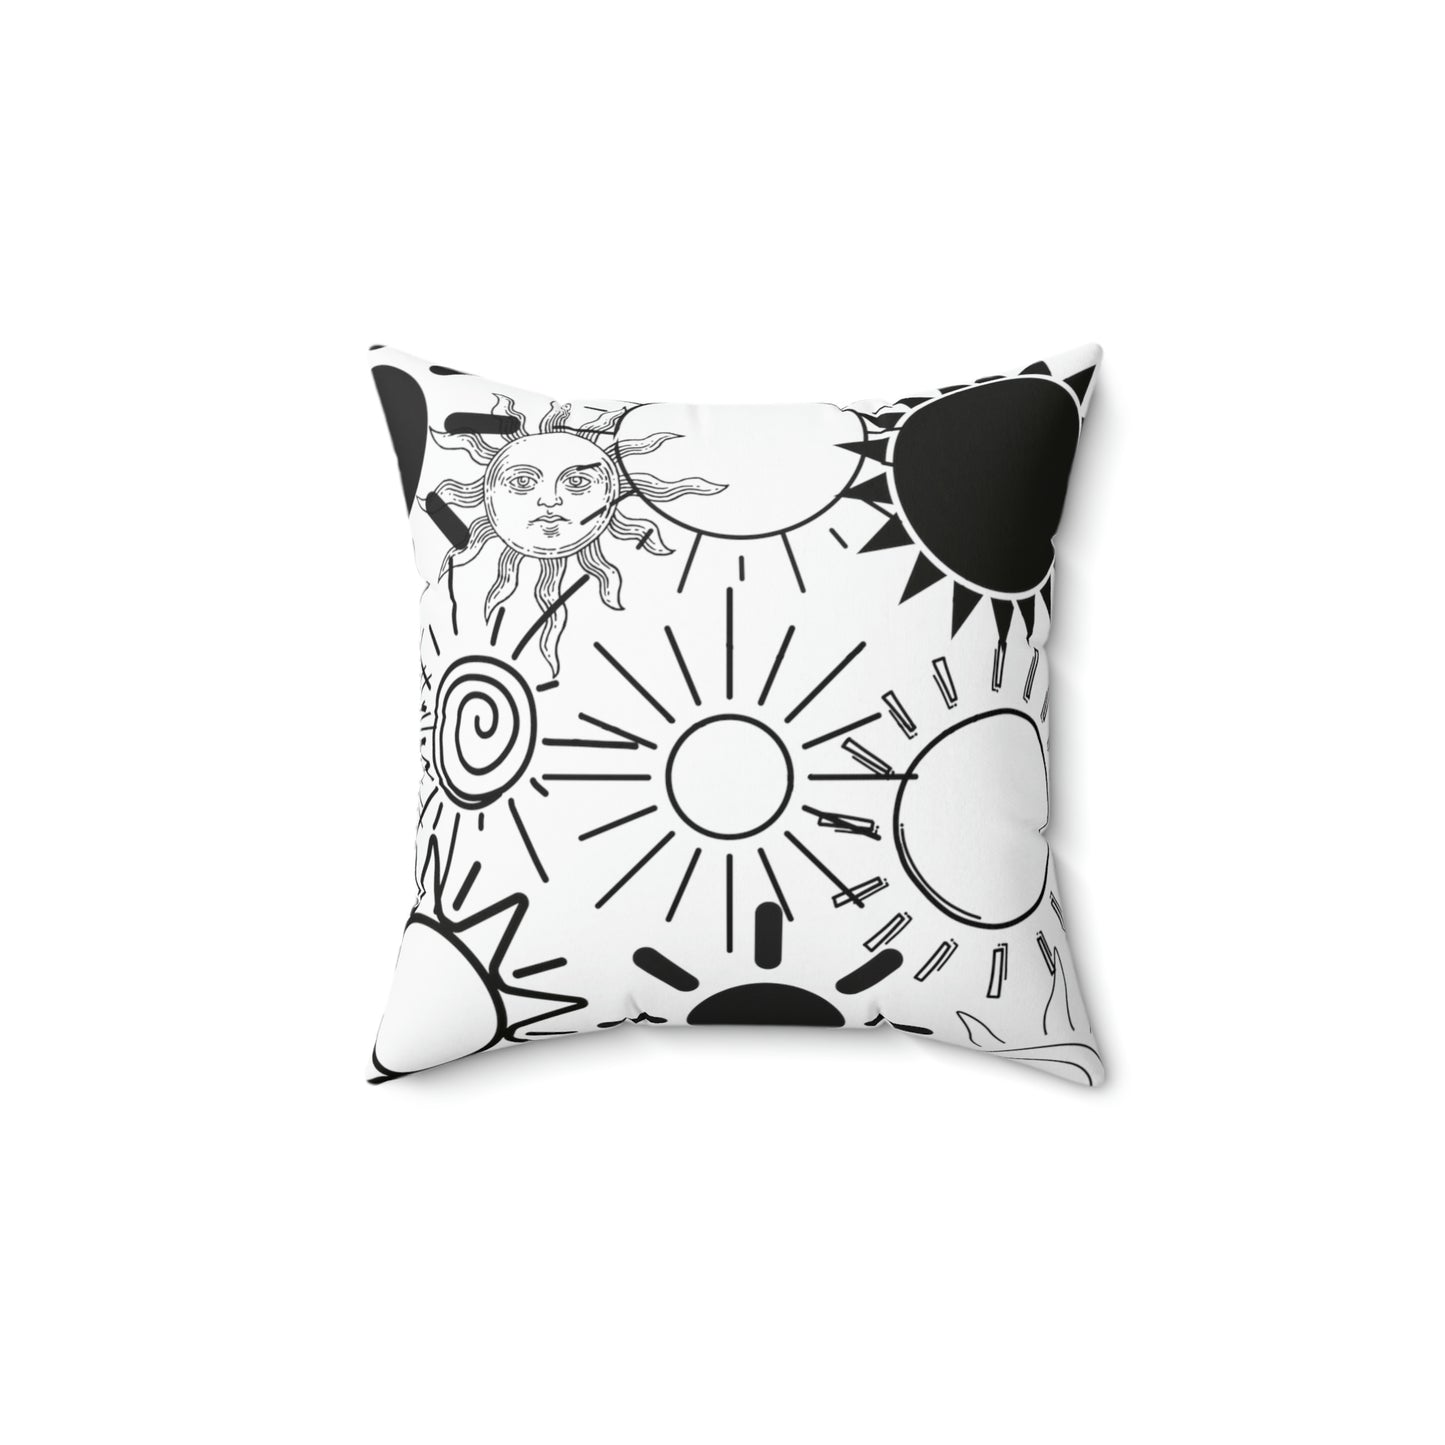 Sun pillow - Spun Polyester Square Pillow